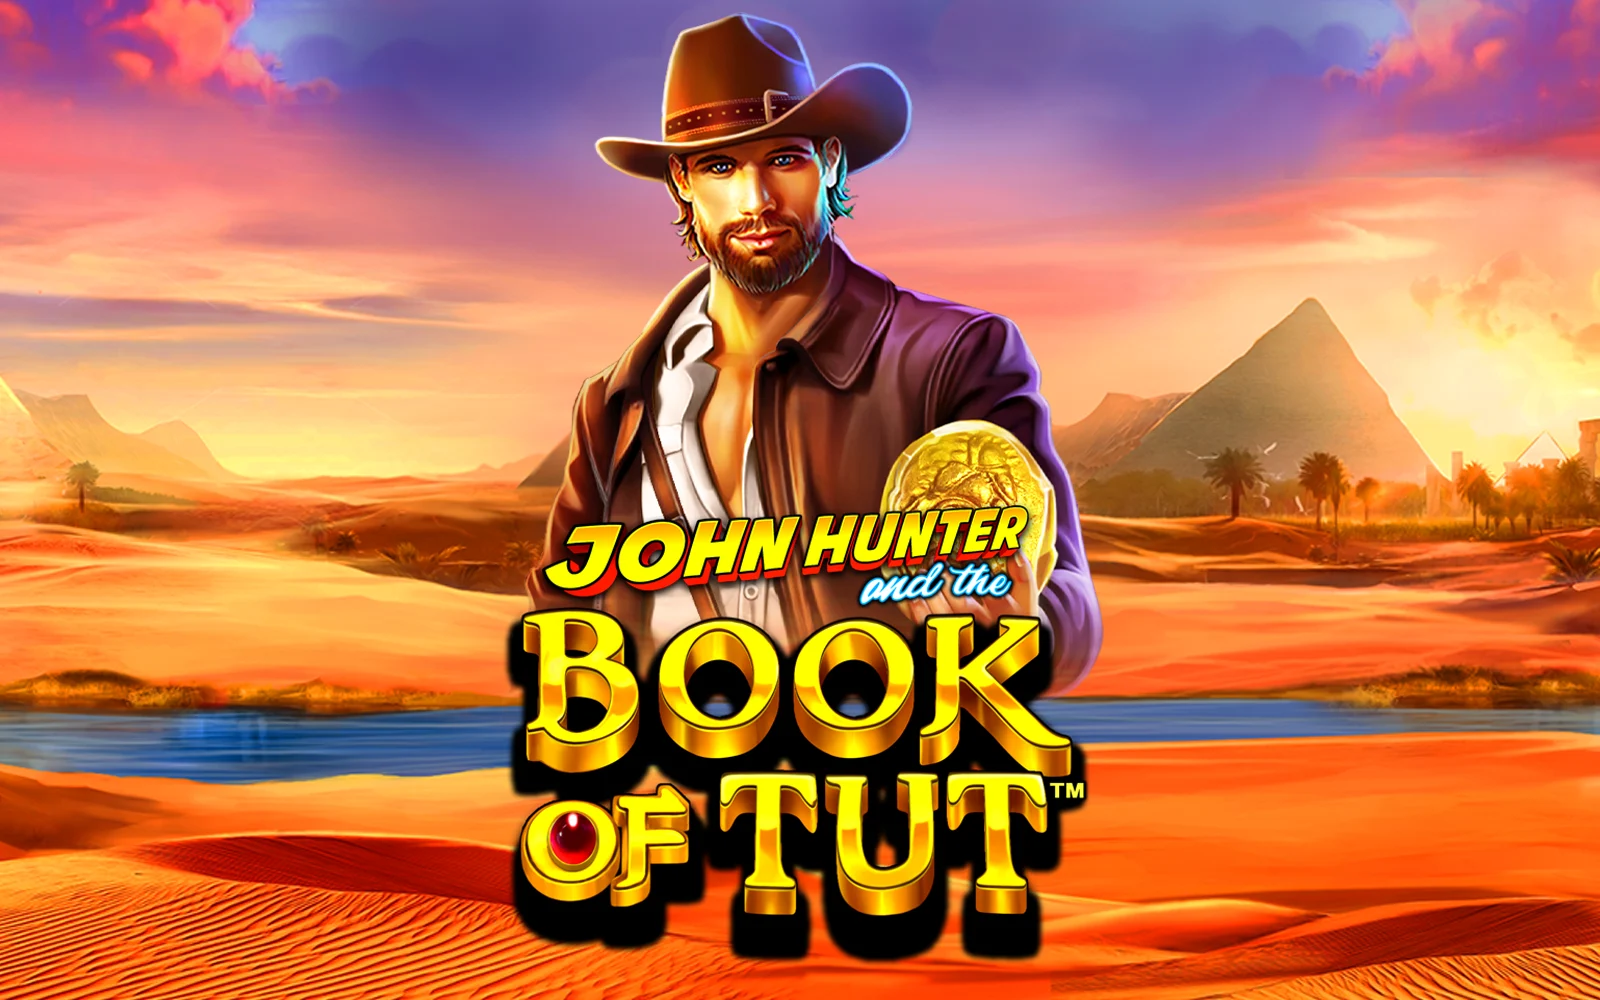 Играйте в John Hunter and the Book of Tut™ в онлайн-казино Starcasino.be